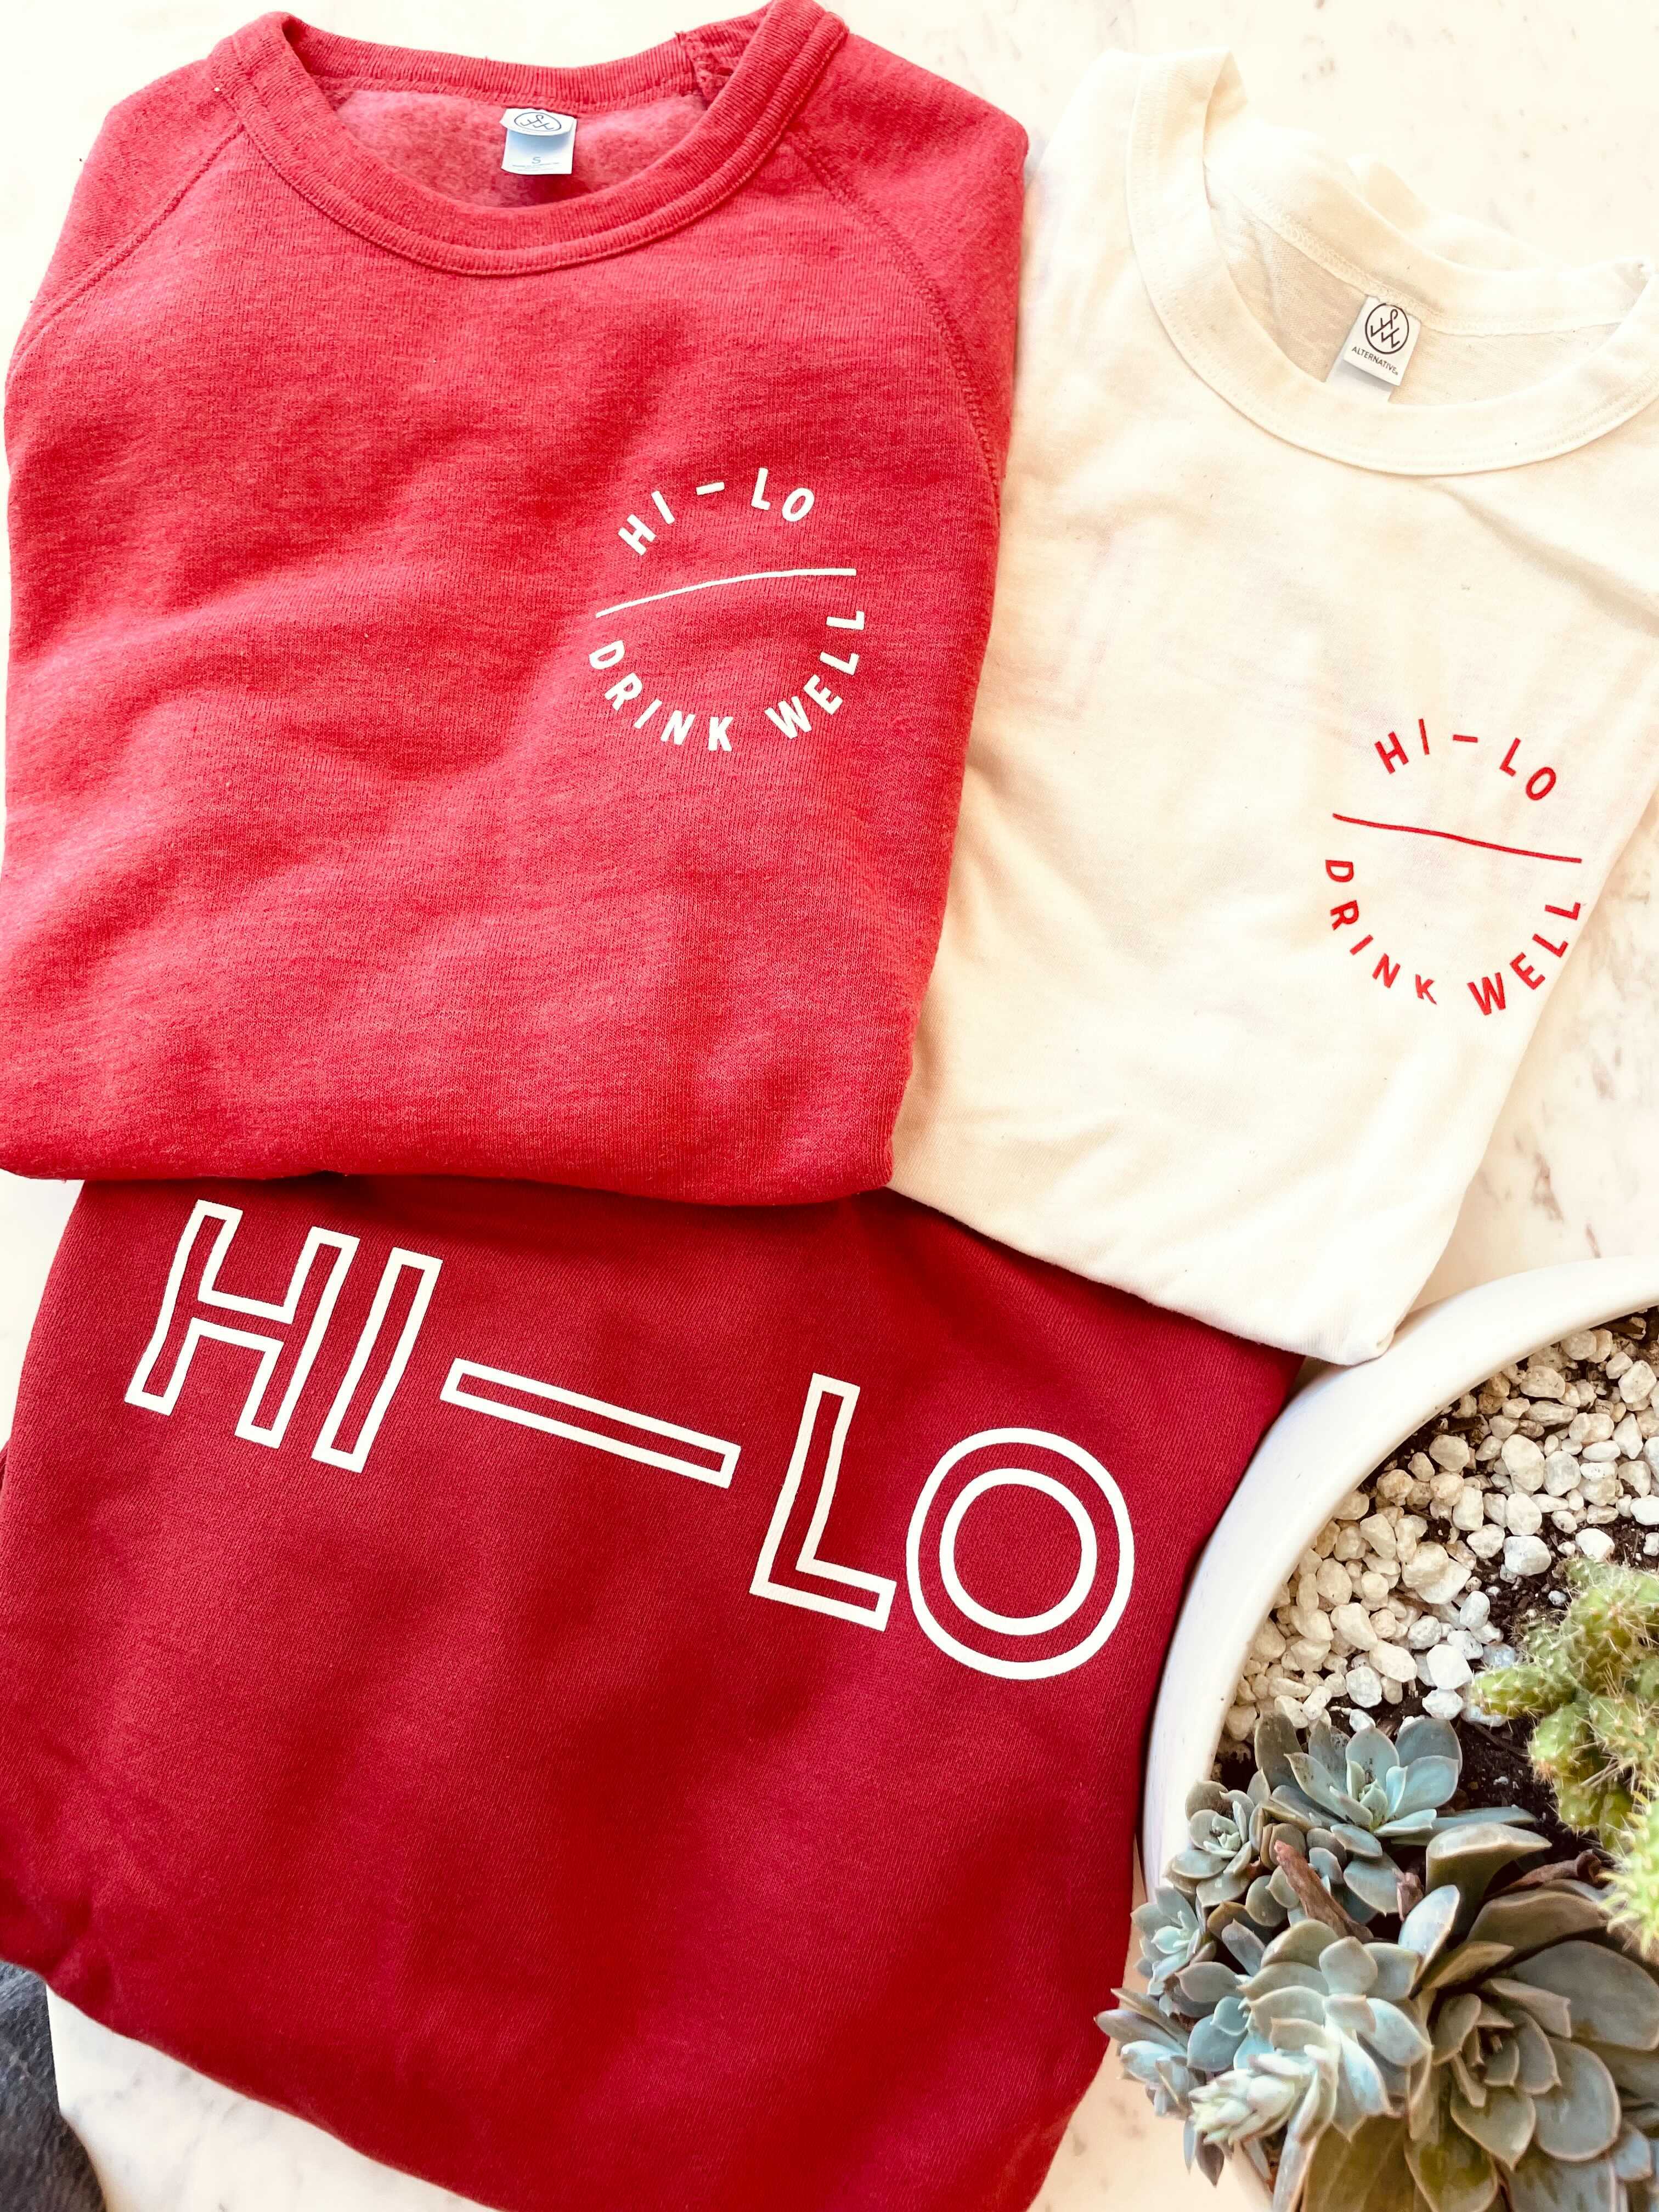 Hi-Lo T-shirts